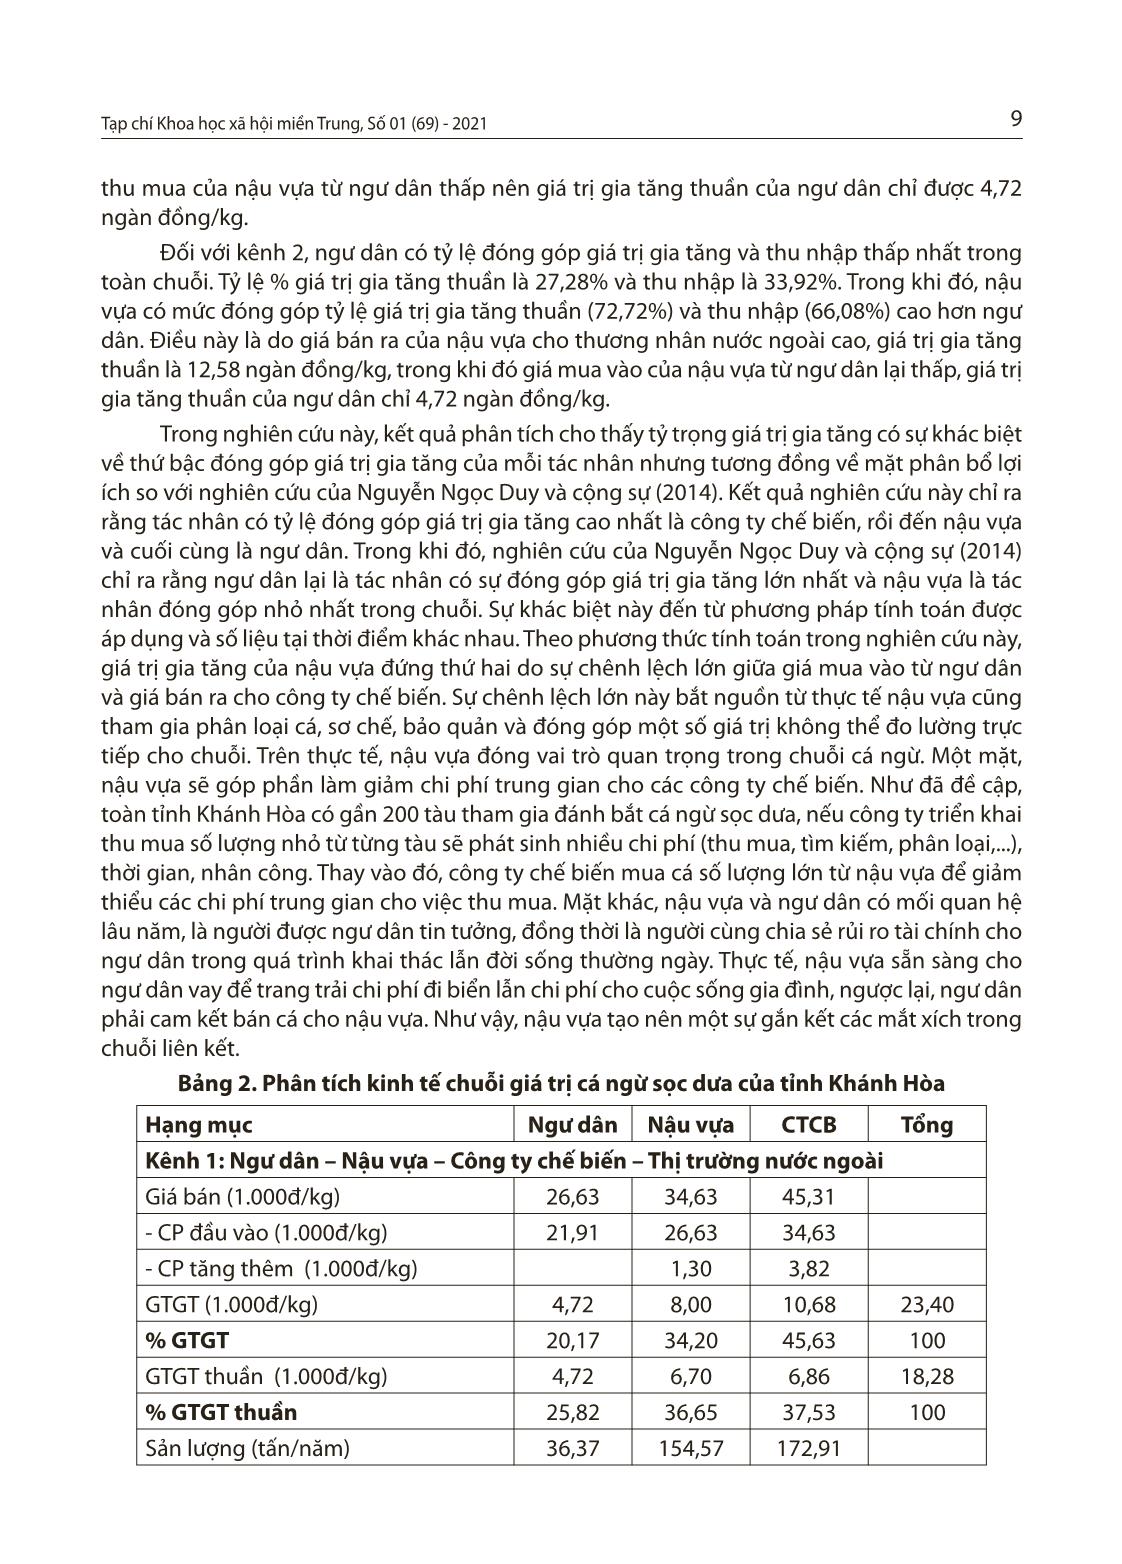 Nghiên cứu chuỗi giá trị cá ngừ sọc dưa tại tỉnh Khánh Hòa trang 7